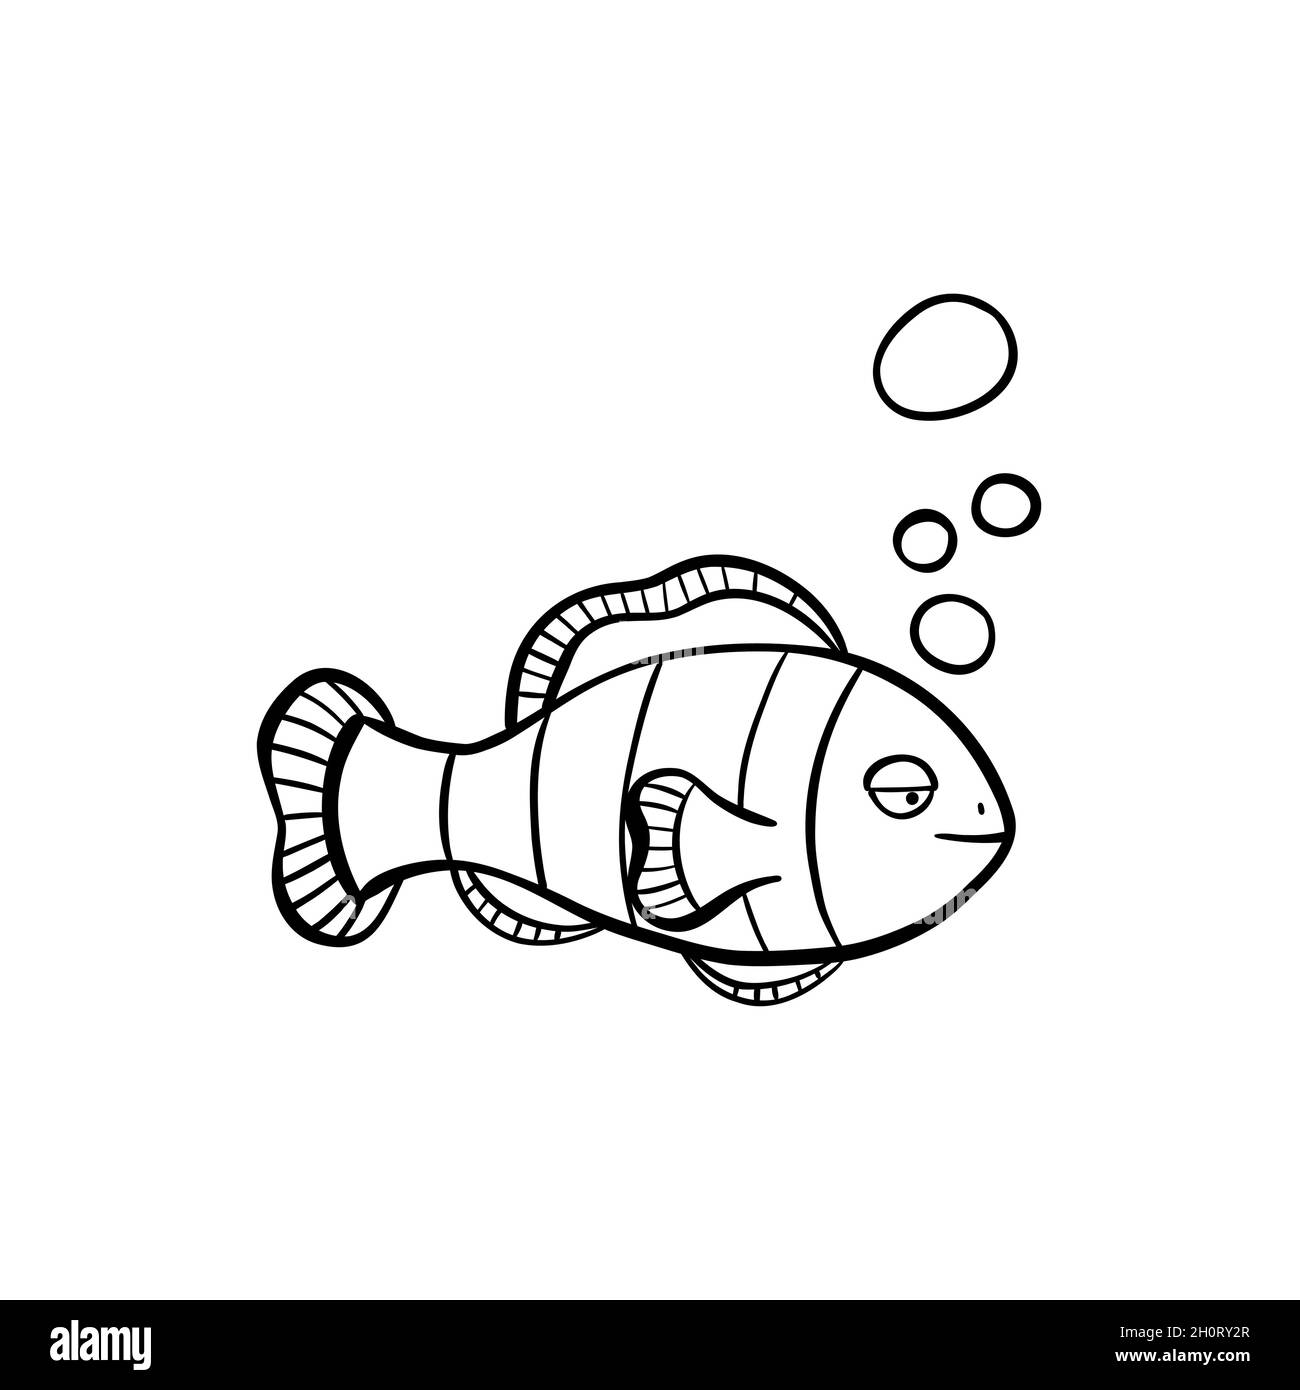 Handgezeichnete Clown-Fisch-Illustration im Doodle-Stil Stock Vektor